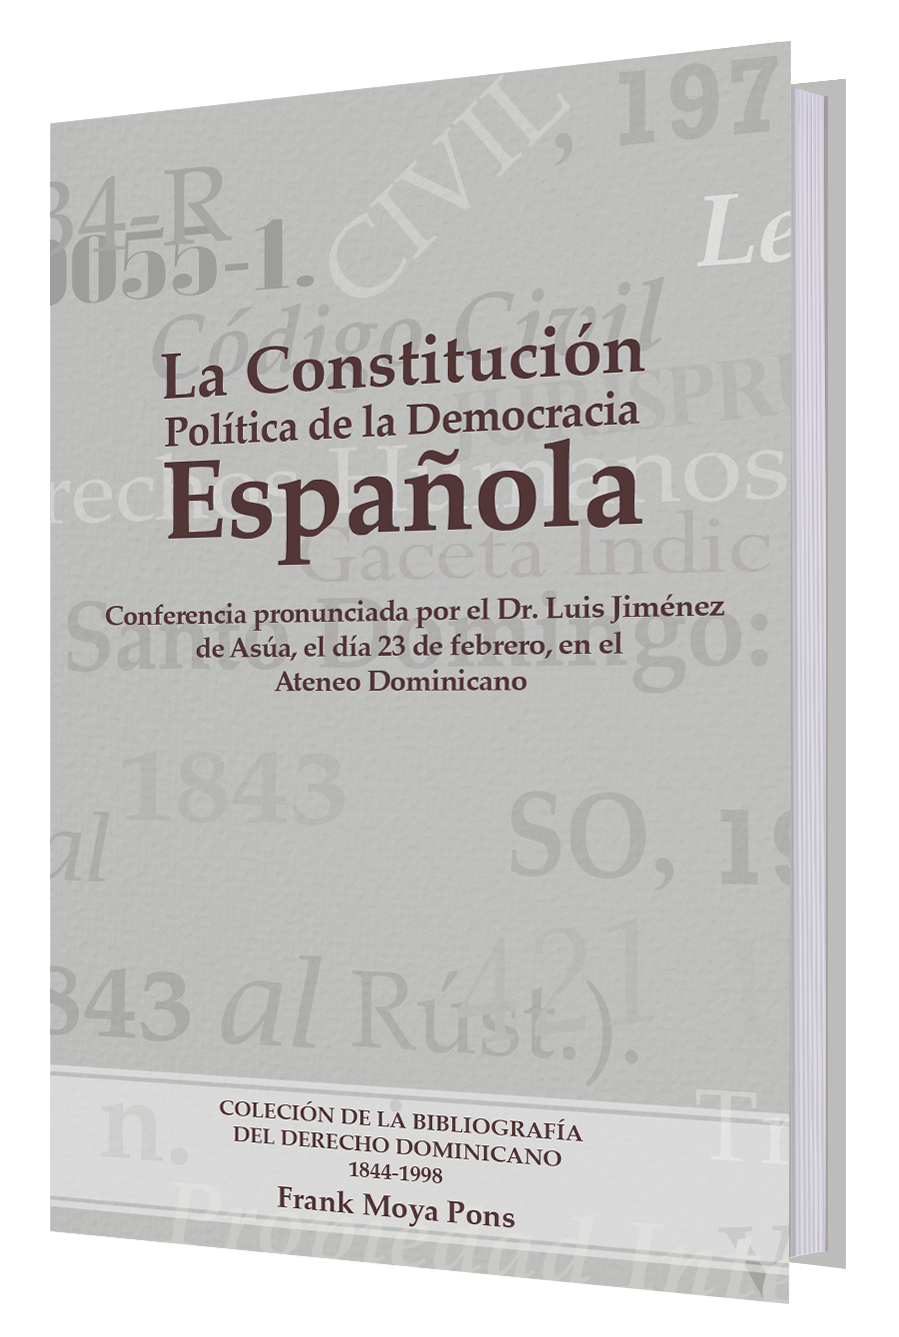 La constitución política de la democracia española : conferencia pronunciada por el Dr. Luis Jiménez de Asúa el día 23 de febrero en el Ateneo Dominicano